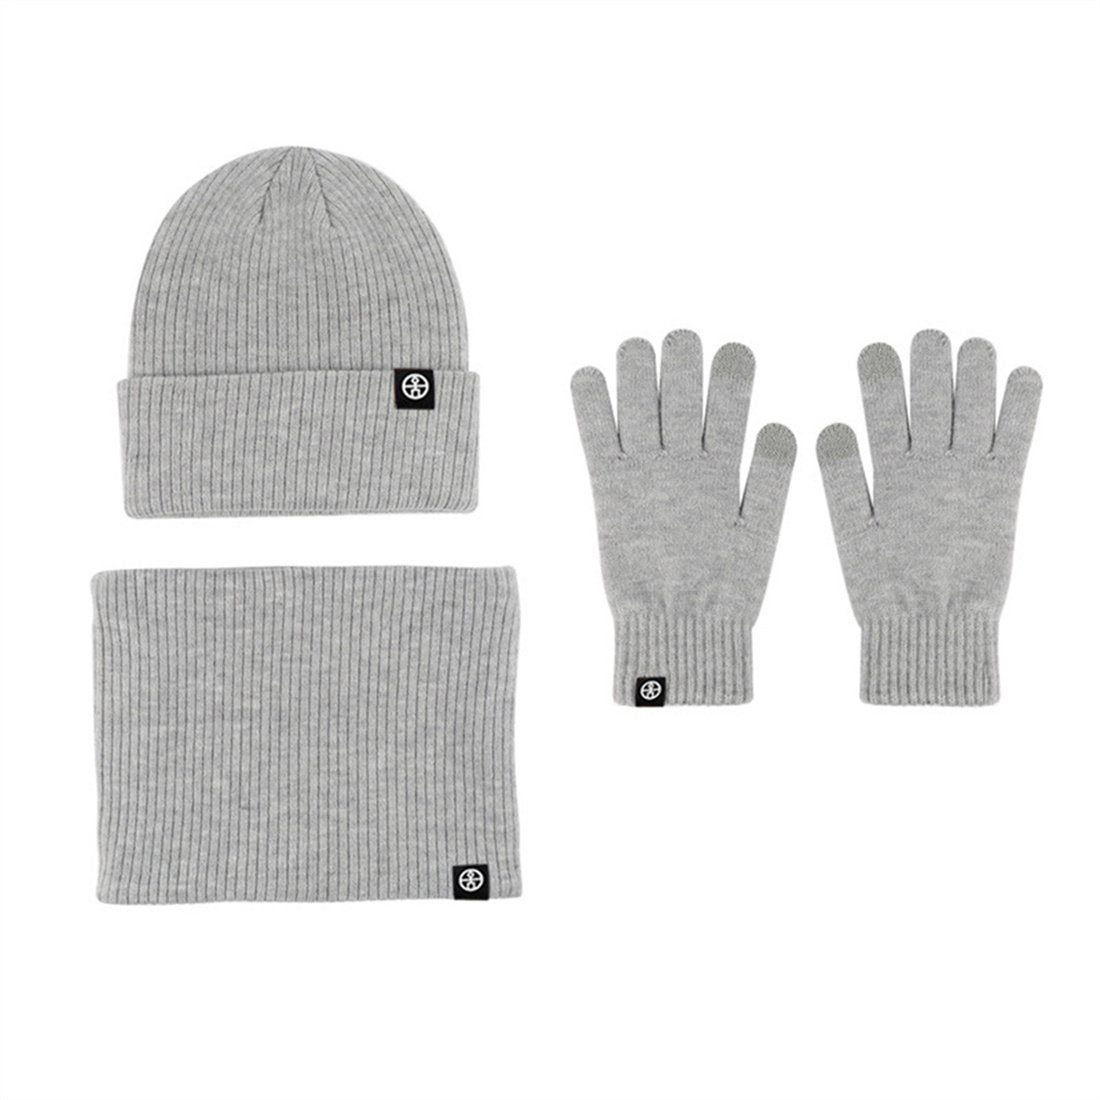 DÖRÖY Strickmütze Unisex Winter Warmth 3 Piece Set, Strickmütze + Schal + Handschuhe Grau